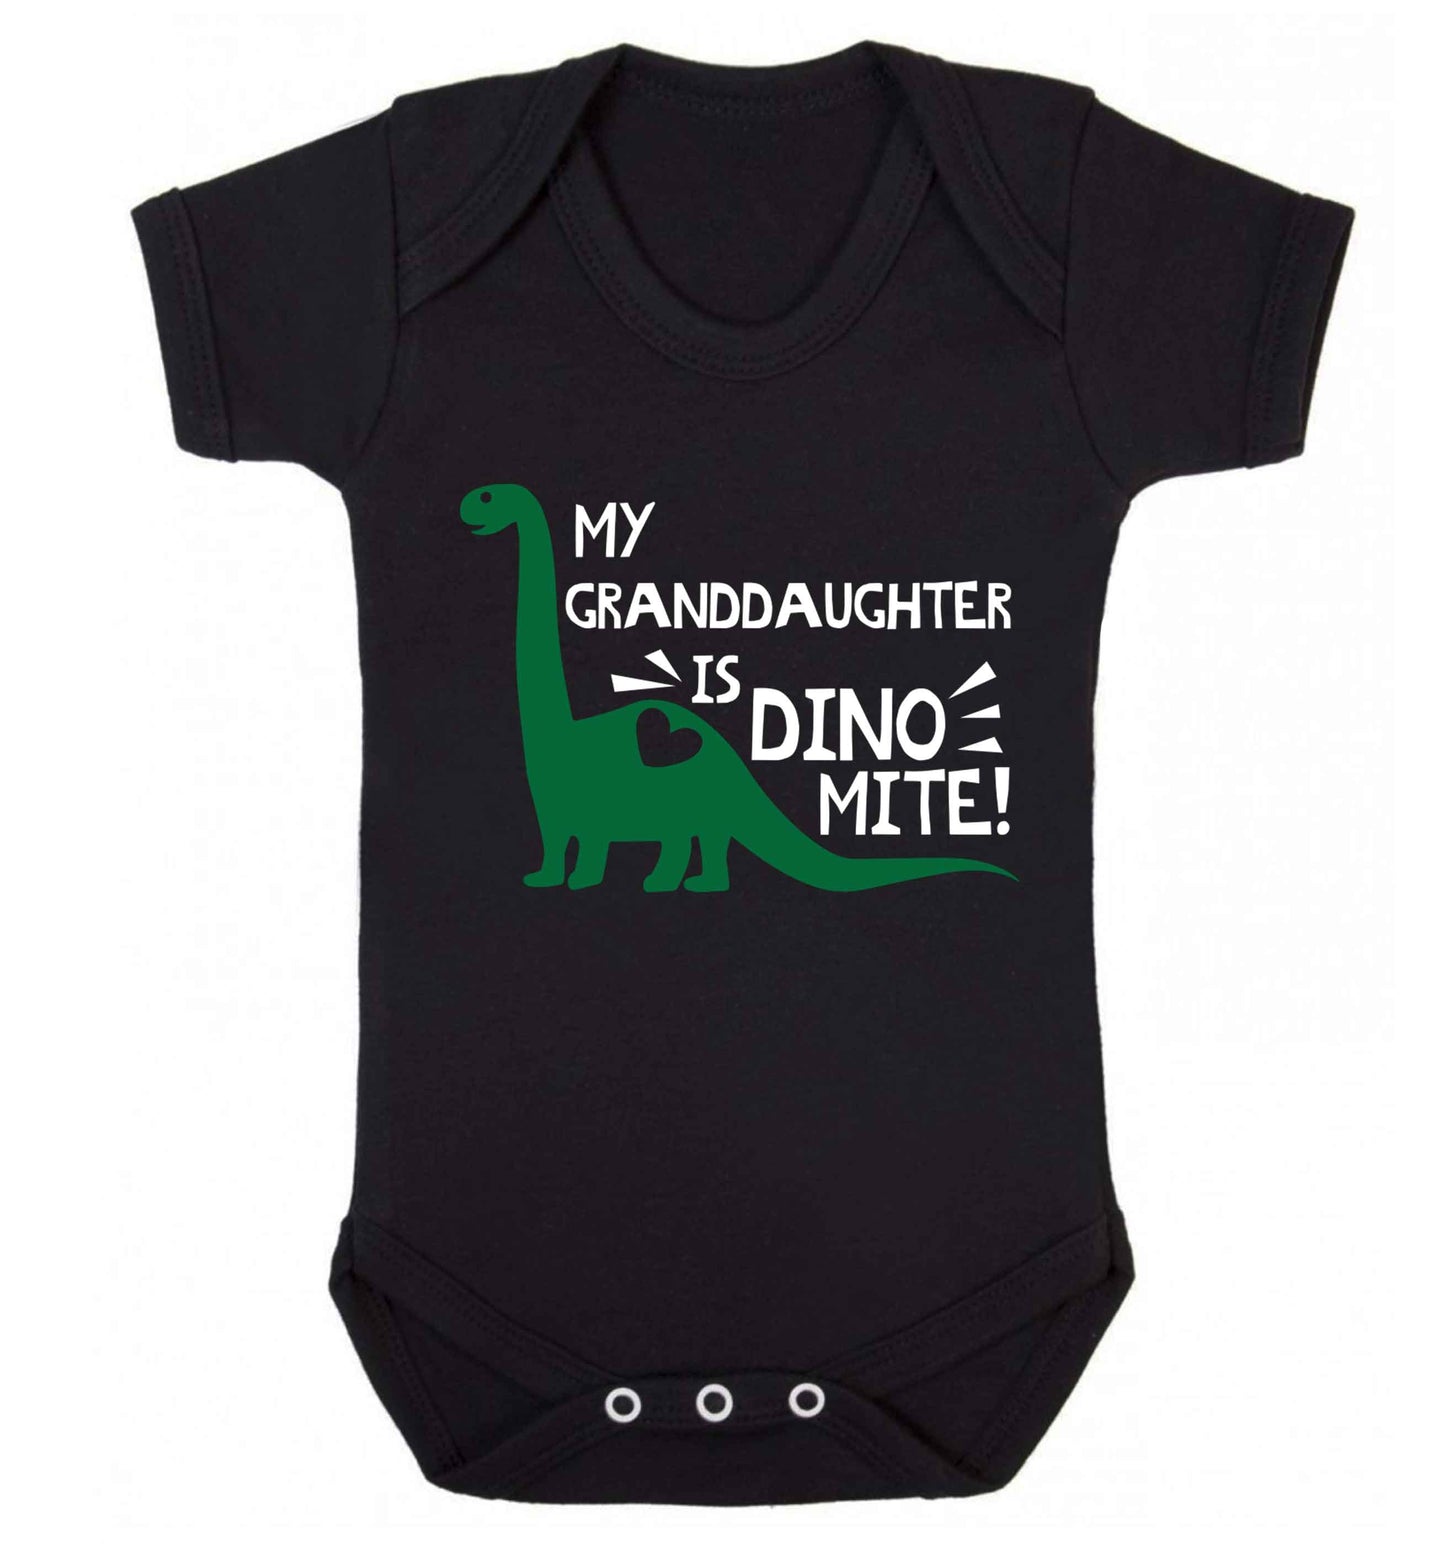 My granddaughter is dinomite! Baby Vest black 18-24 months